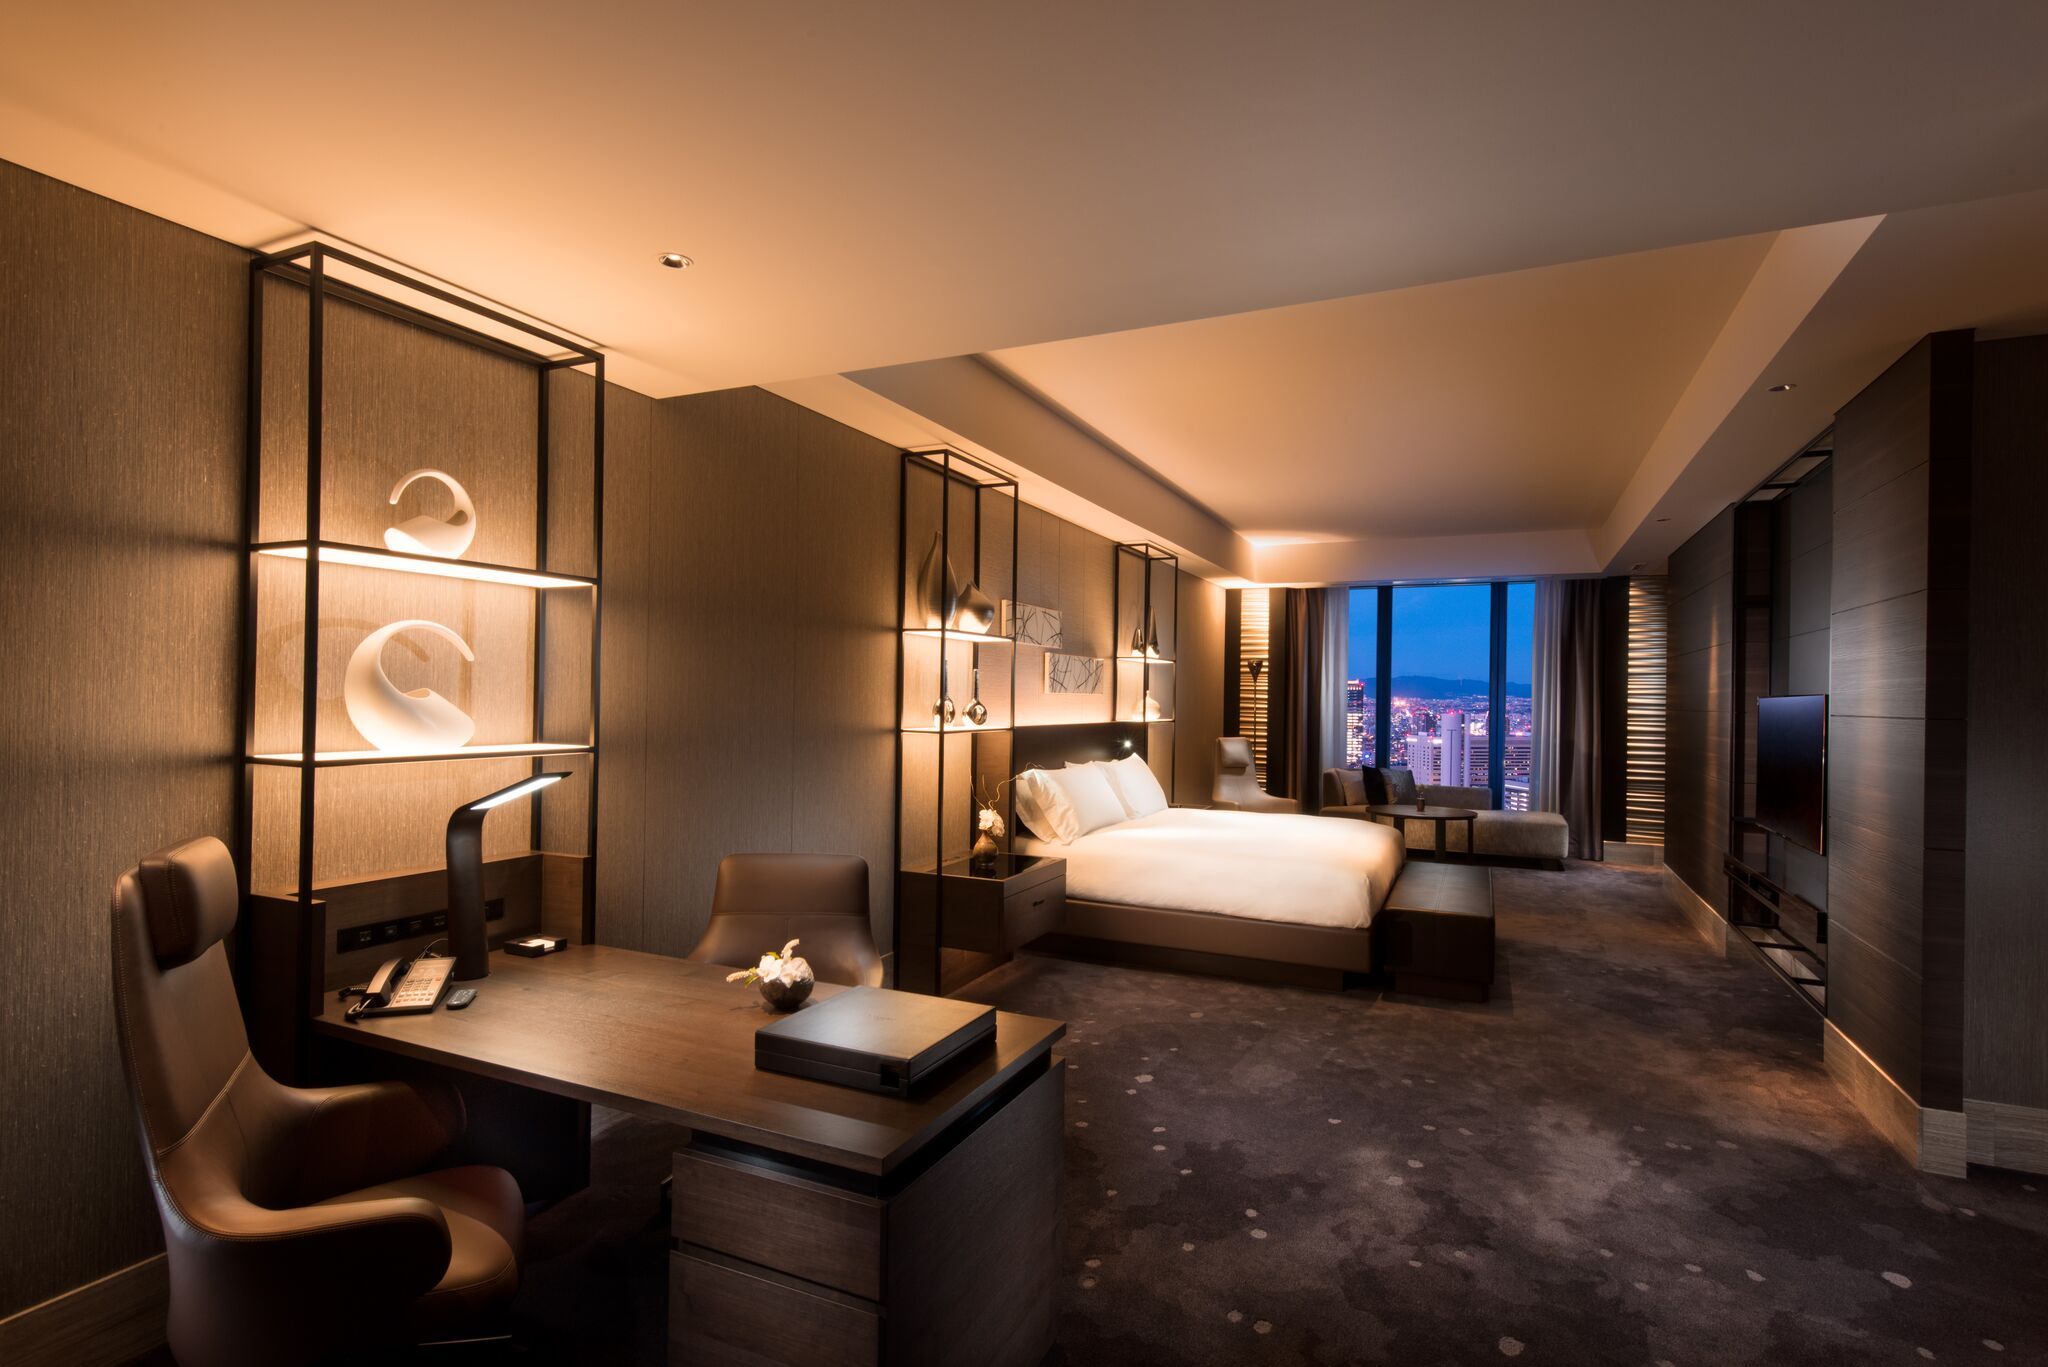 Style européen complet fait 5 étoiles de luxe de luxe moderne de chambre à coucher meubles de chambre à coucher